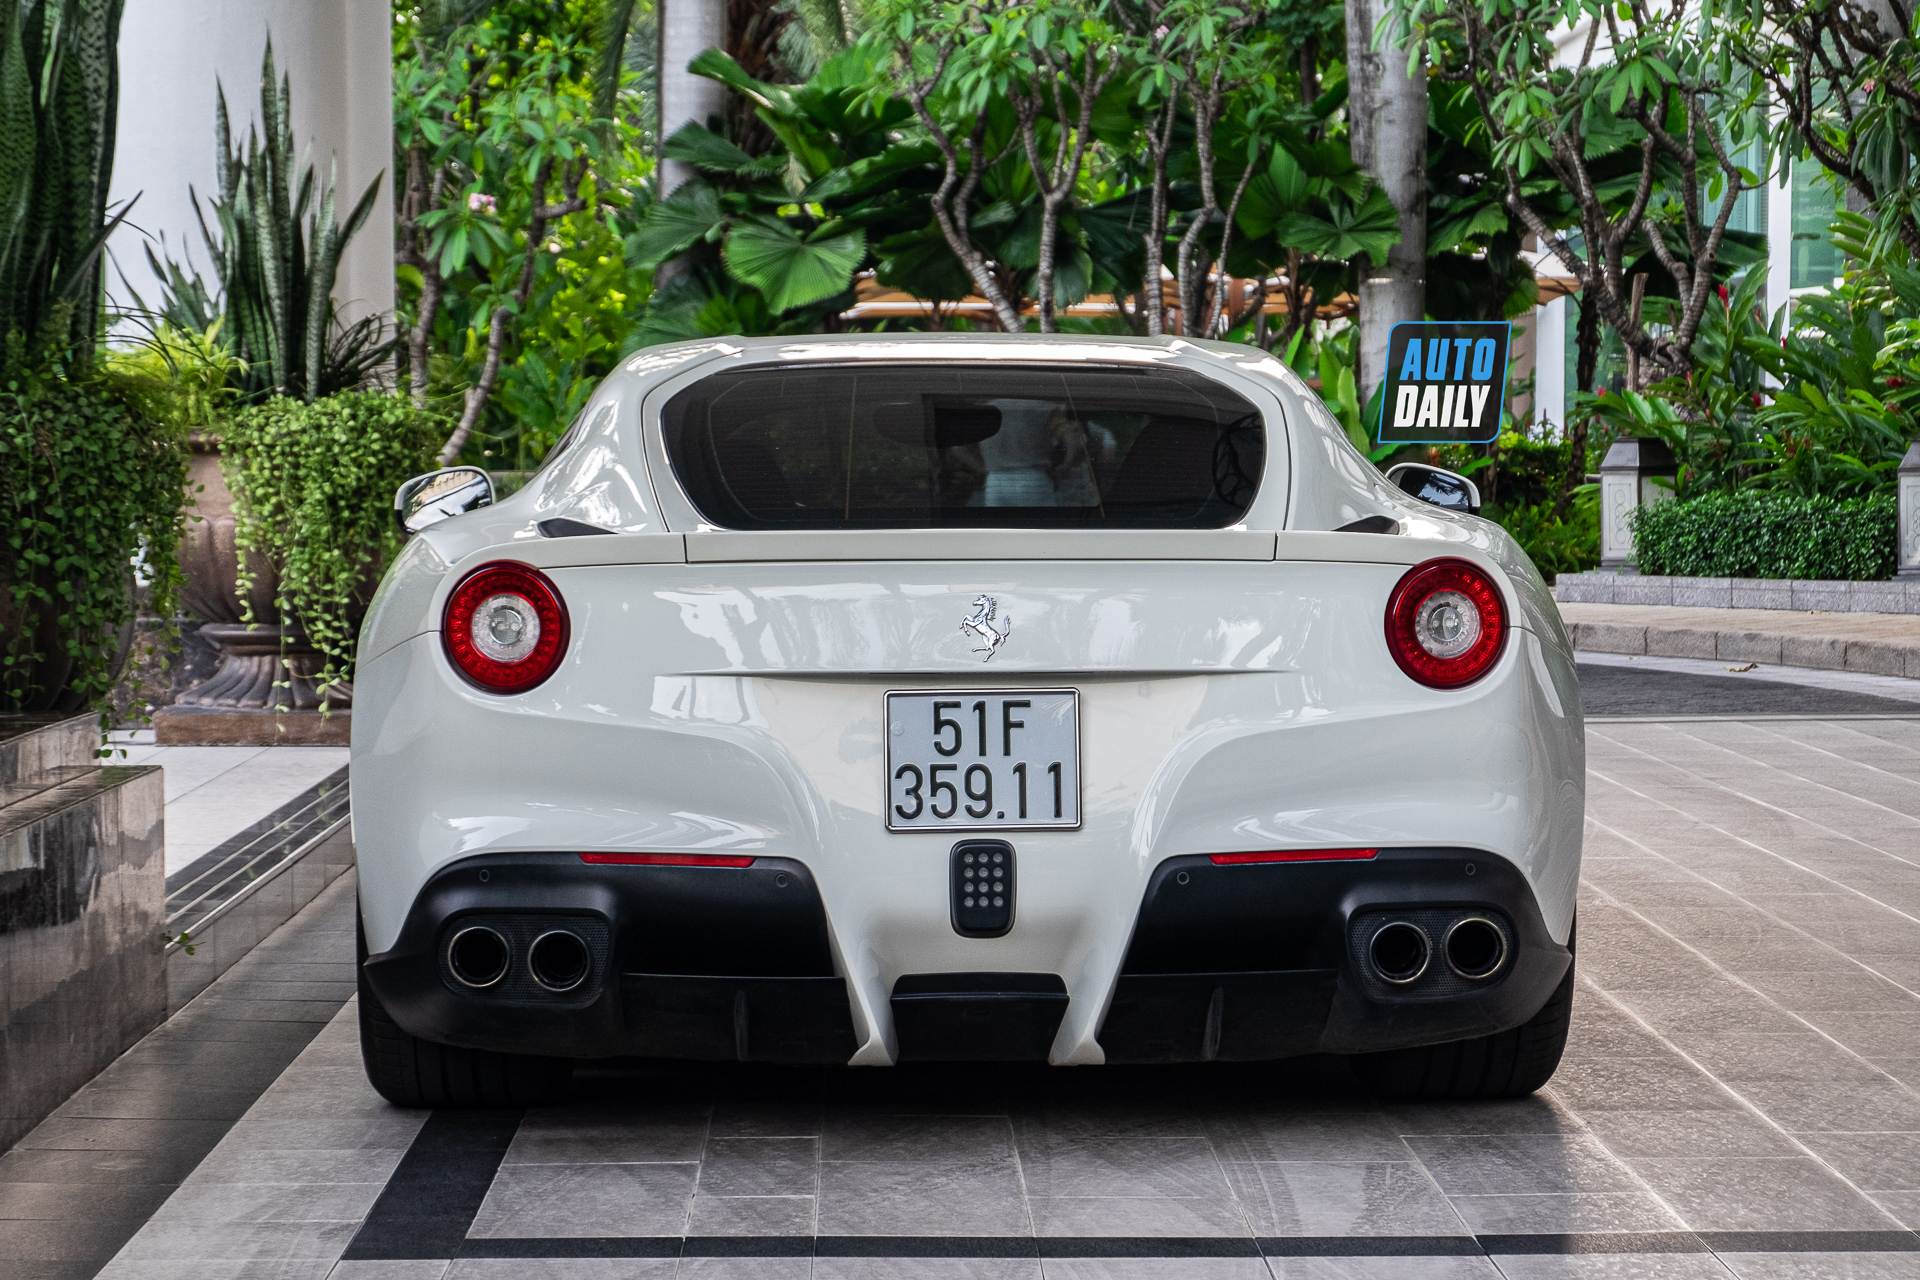 Ferrari F12 màu trắng độc nhất Việt Nam tái xuất trên phố, 6 năm chạy vỏn vẹn 255 km ferrari-f12-berlinetta-mau-trang-doc-nhat-cafeautovn-8.JPG